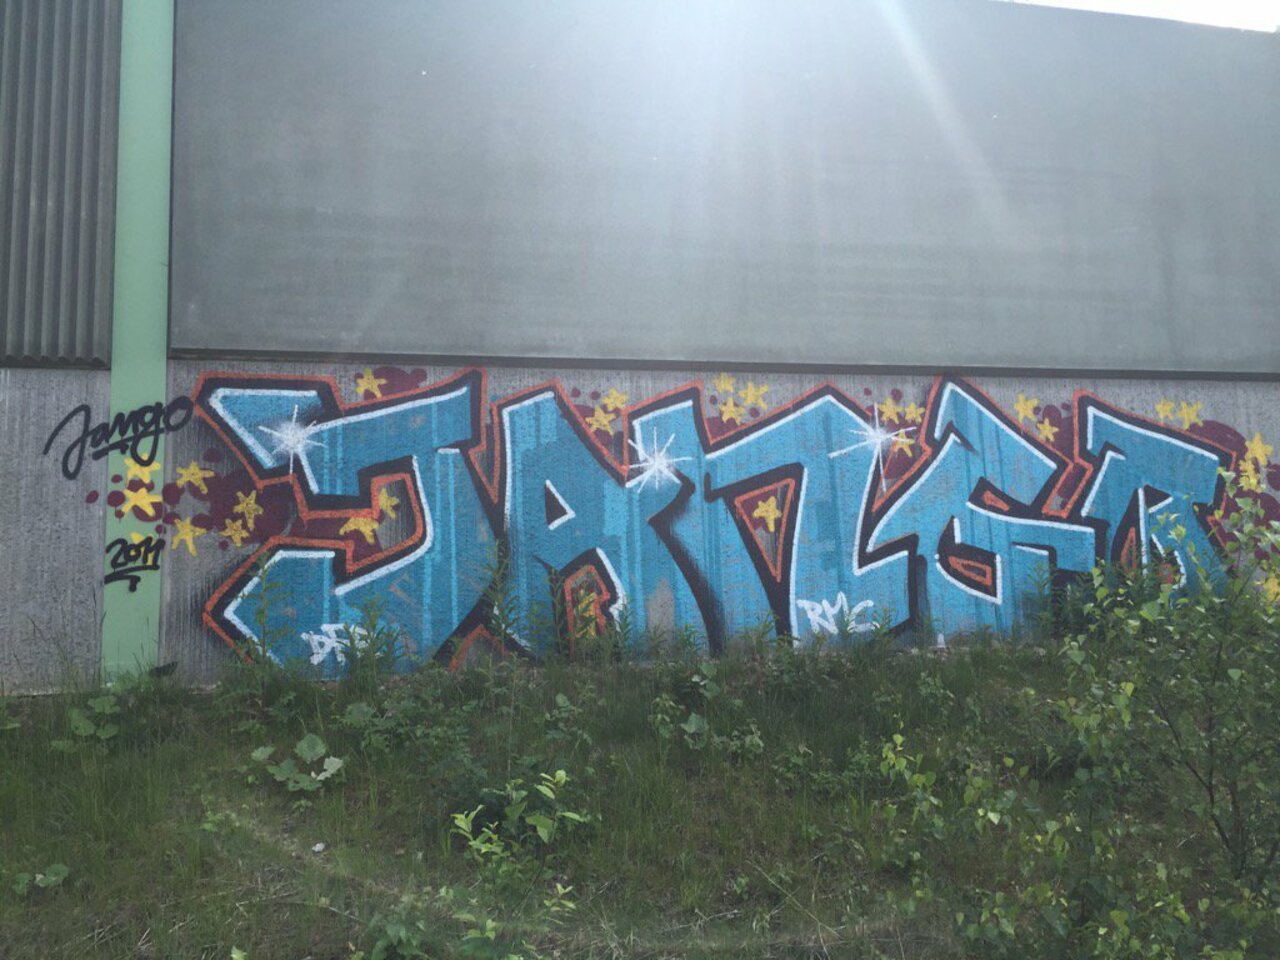 RT @Str33tArt: ...in Niedernhausen// Jango //#streetart #graffiti https://t.co/f59dG943Ht